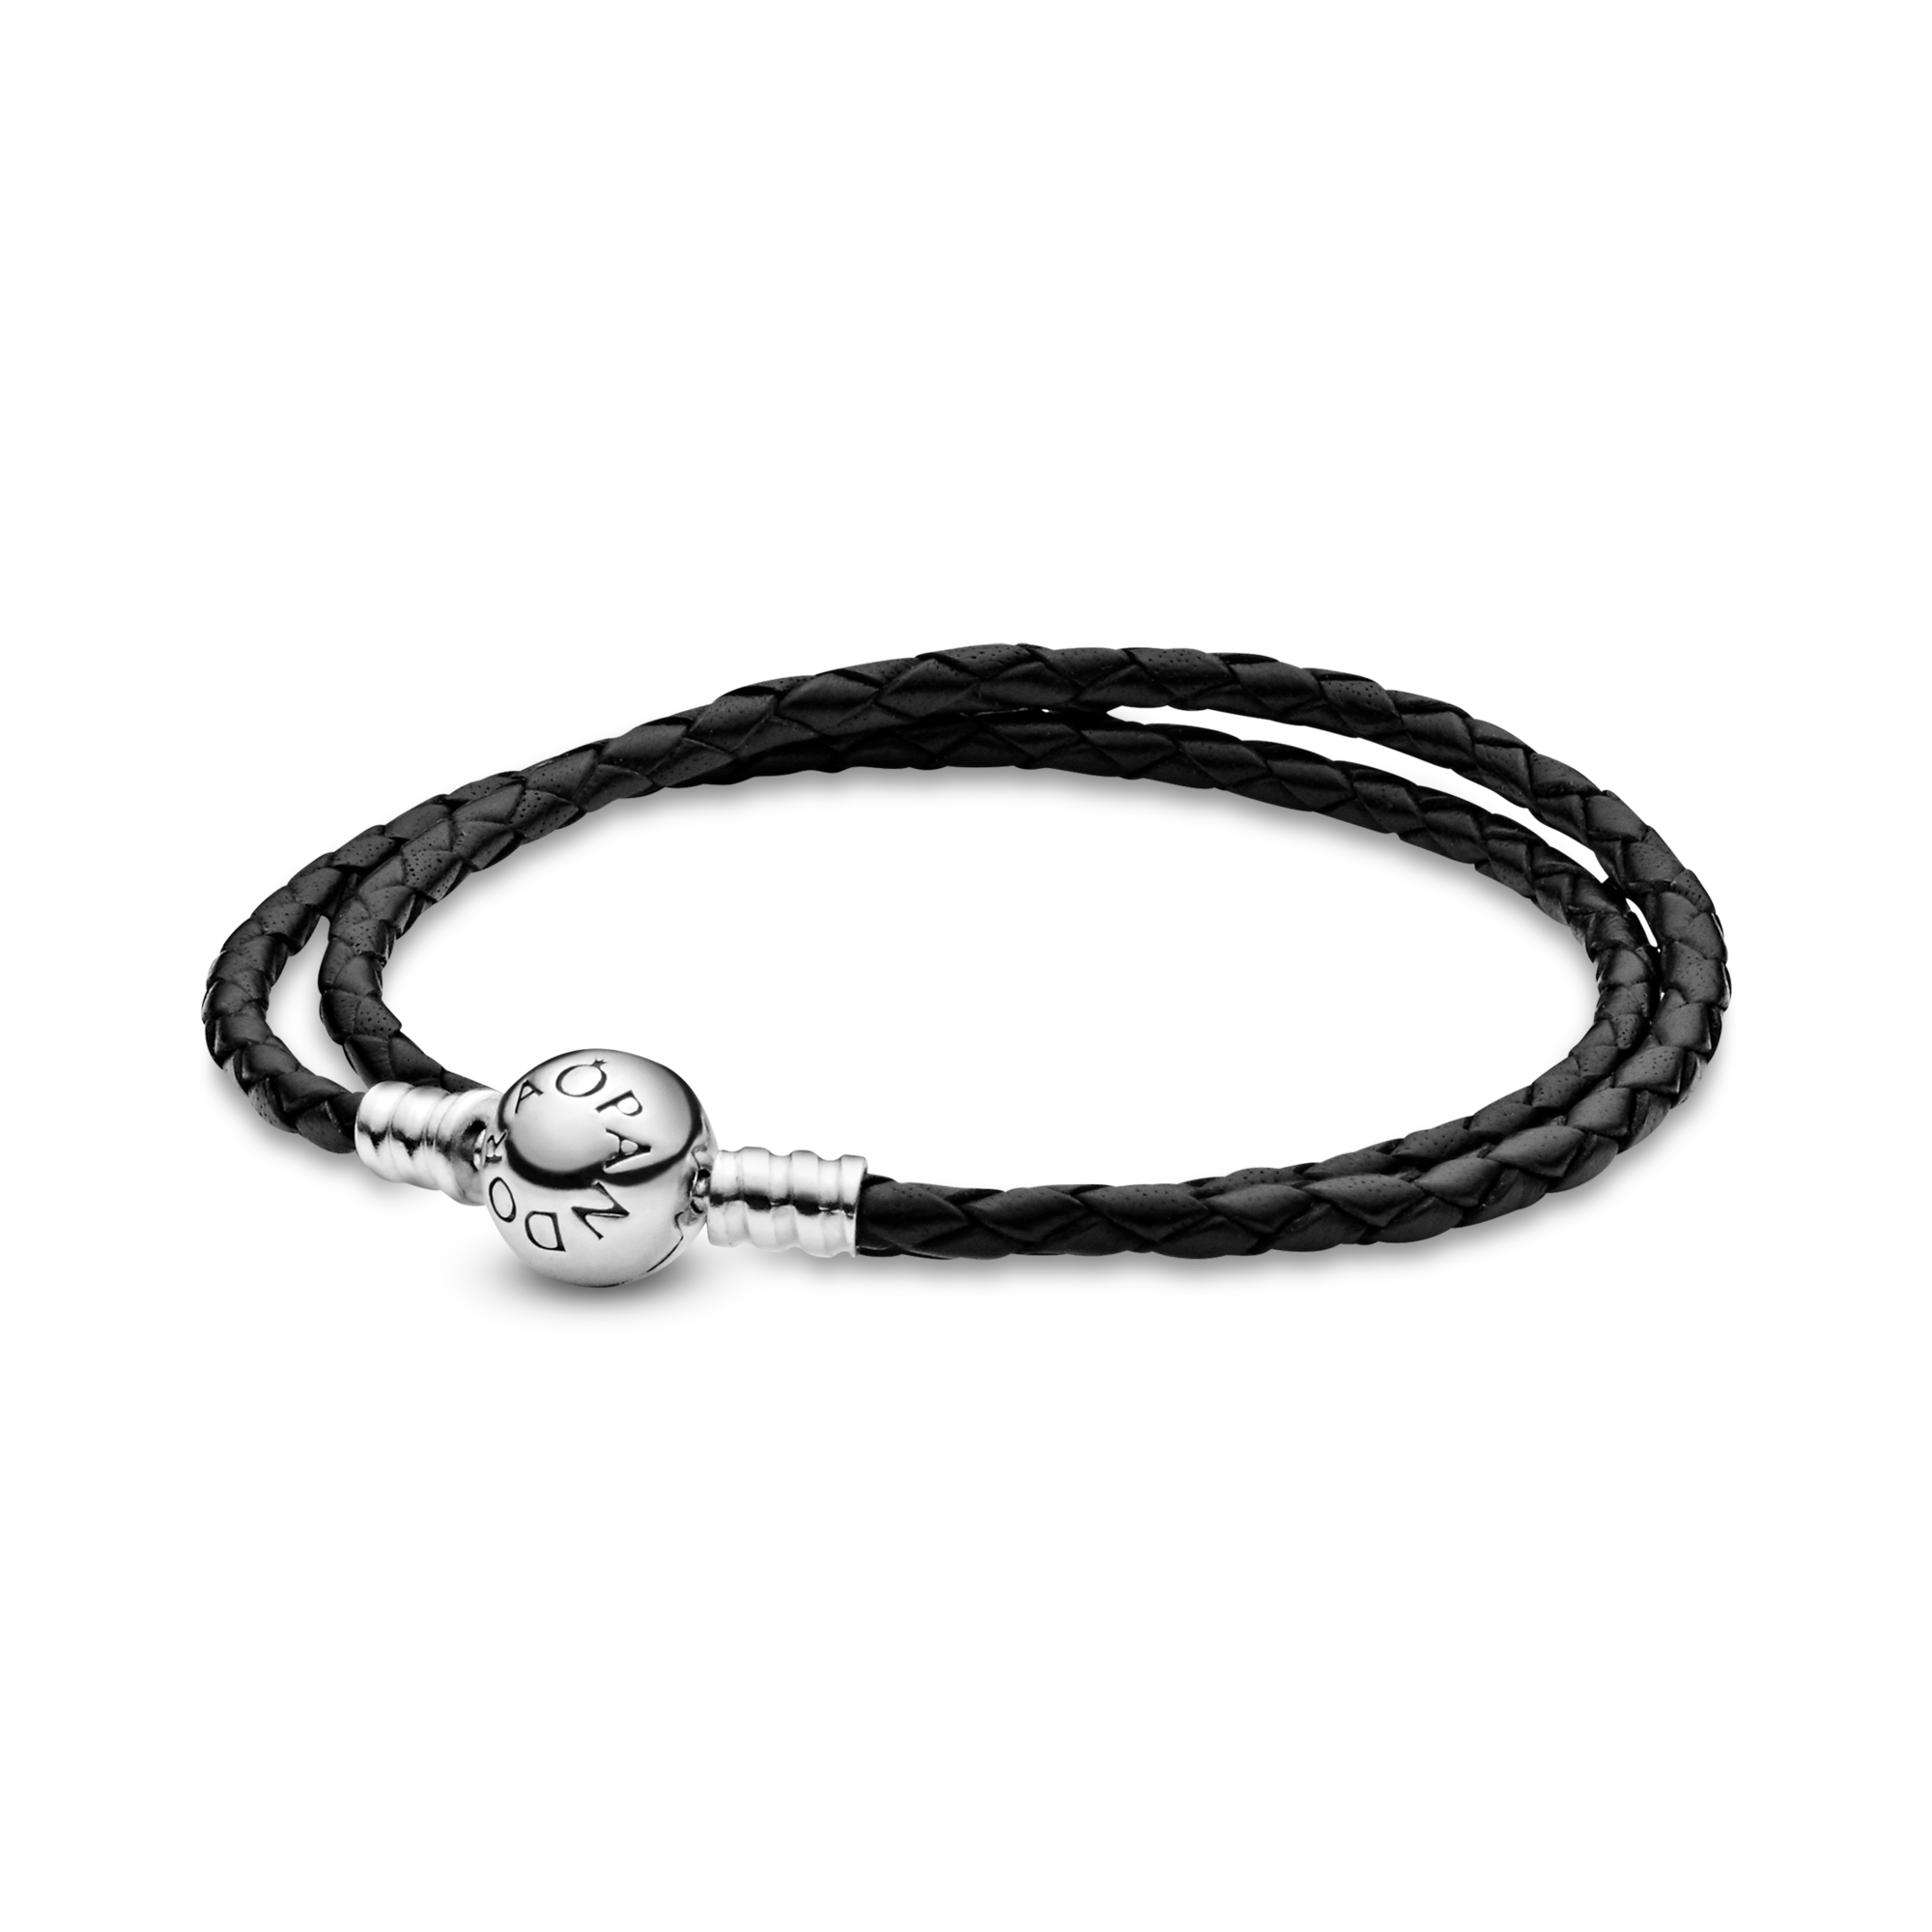 Sakura Beads Bracelet | Pandora bracelet charms ideas, Pandora bracelet  designs, Pandora bracelet pink